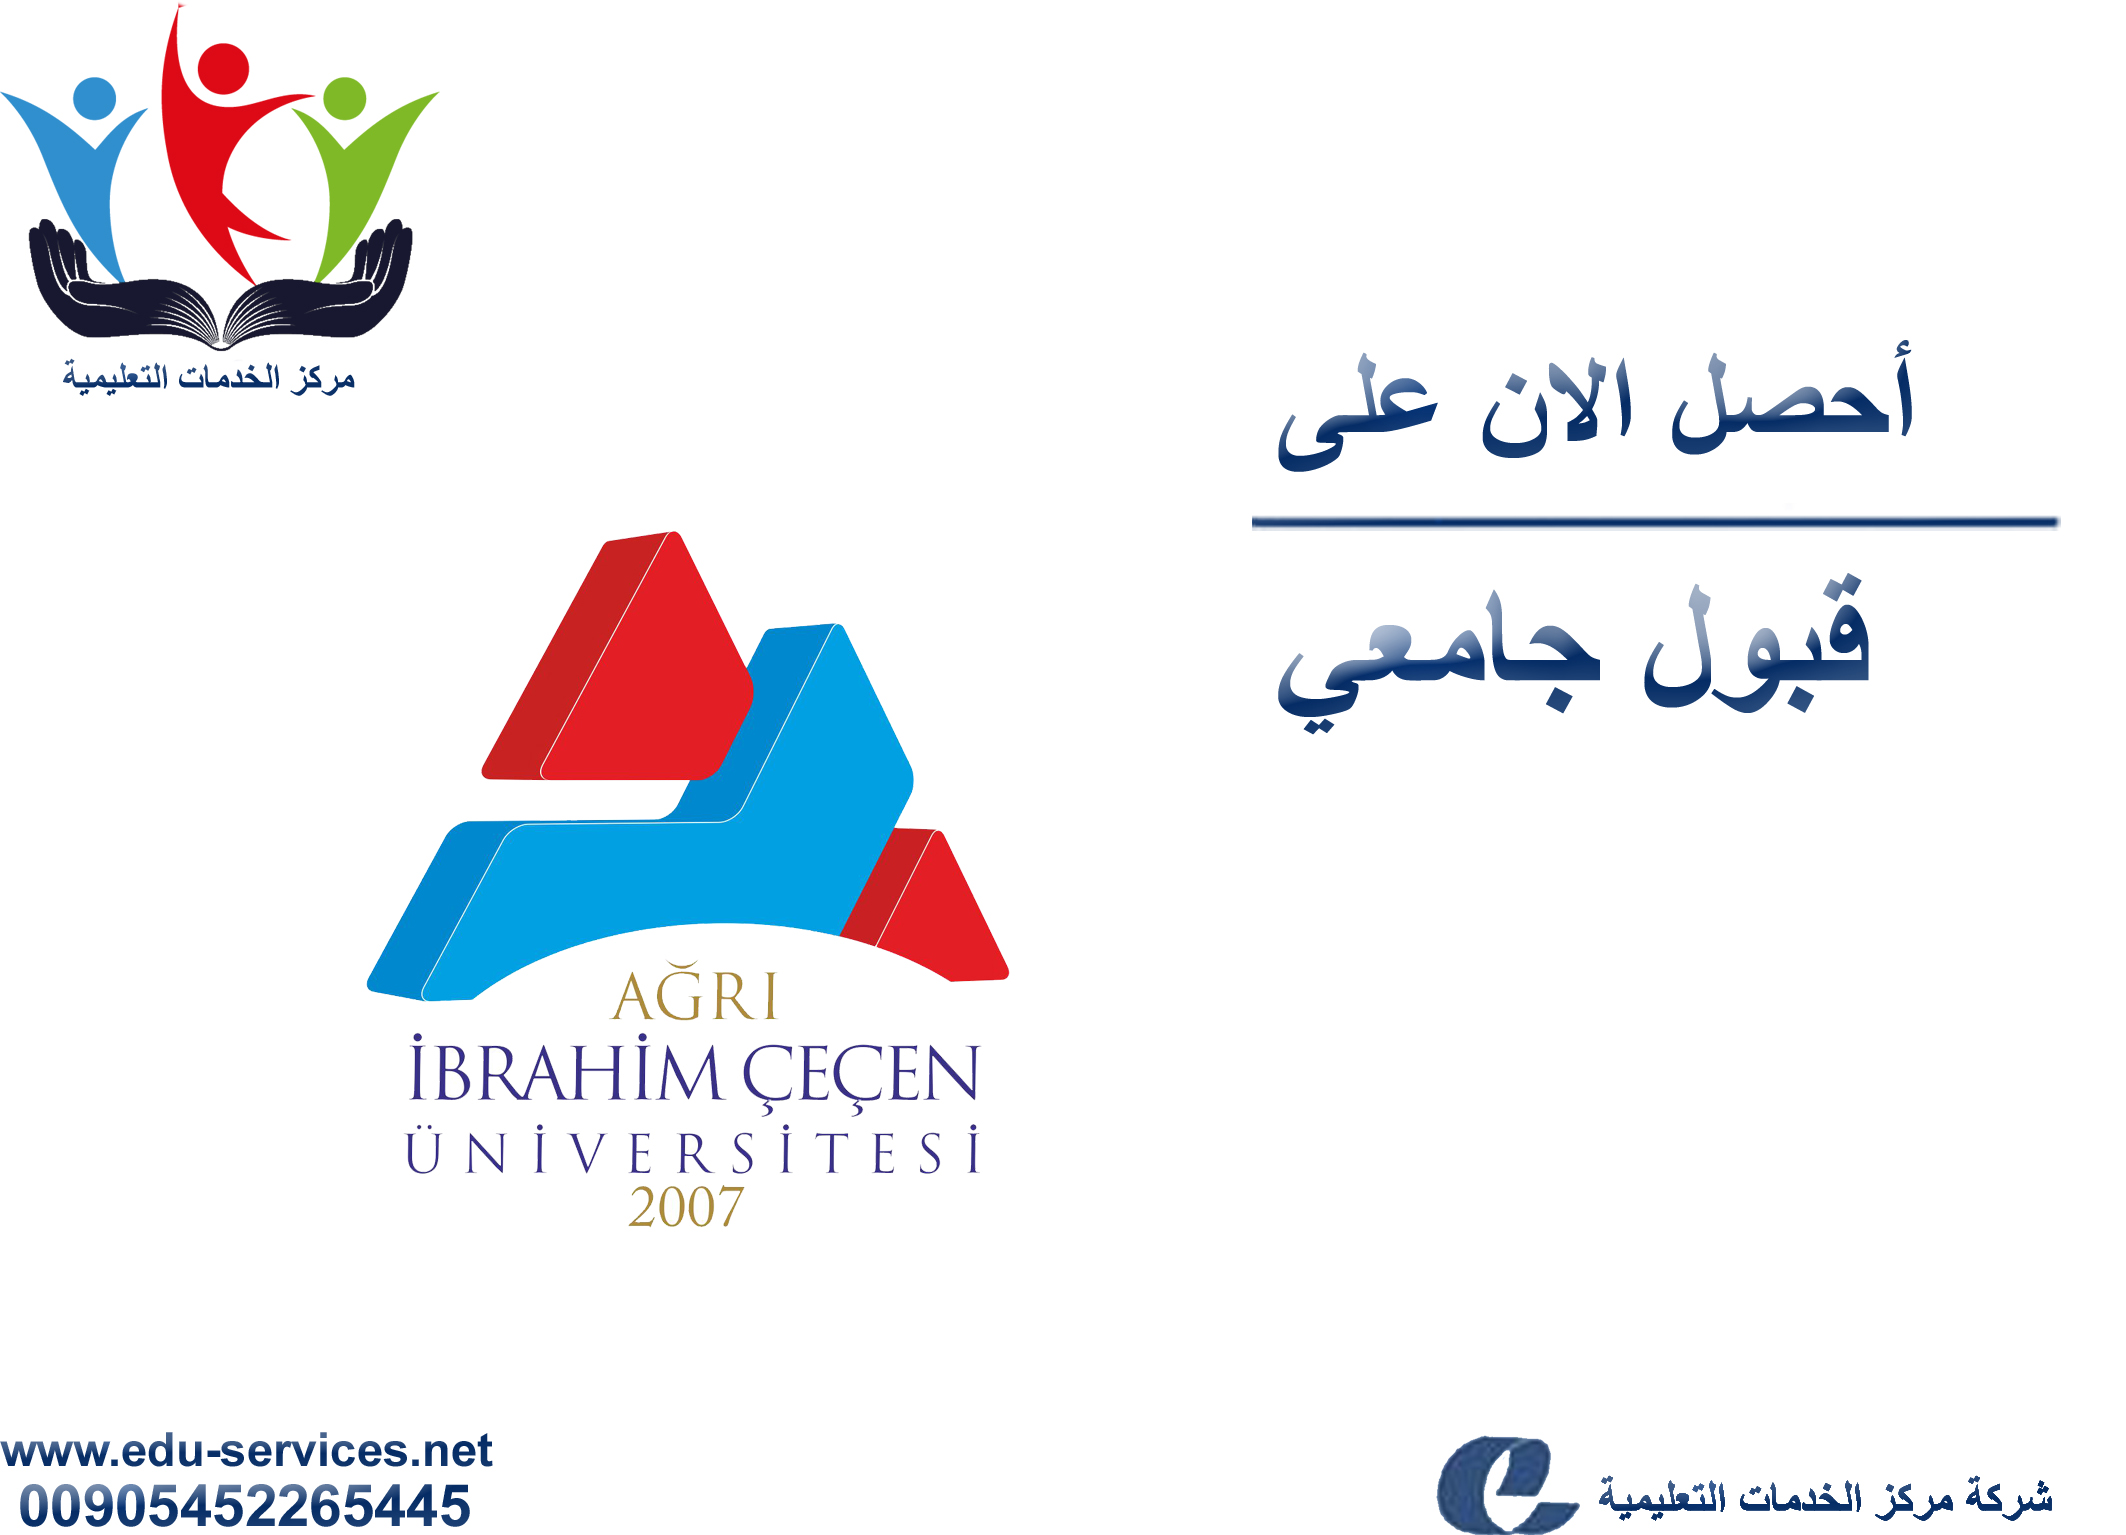 افتتاح التسجيل في جامعة اغري ابراهيم تشاتشان للعام 2017-2018